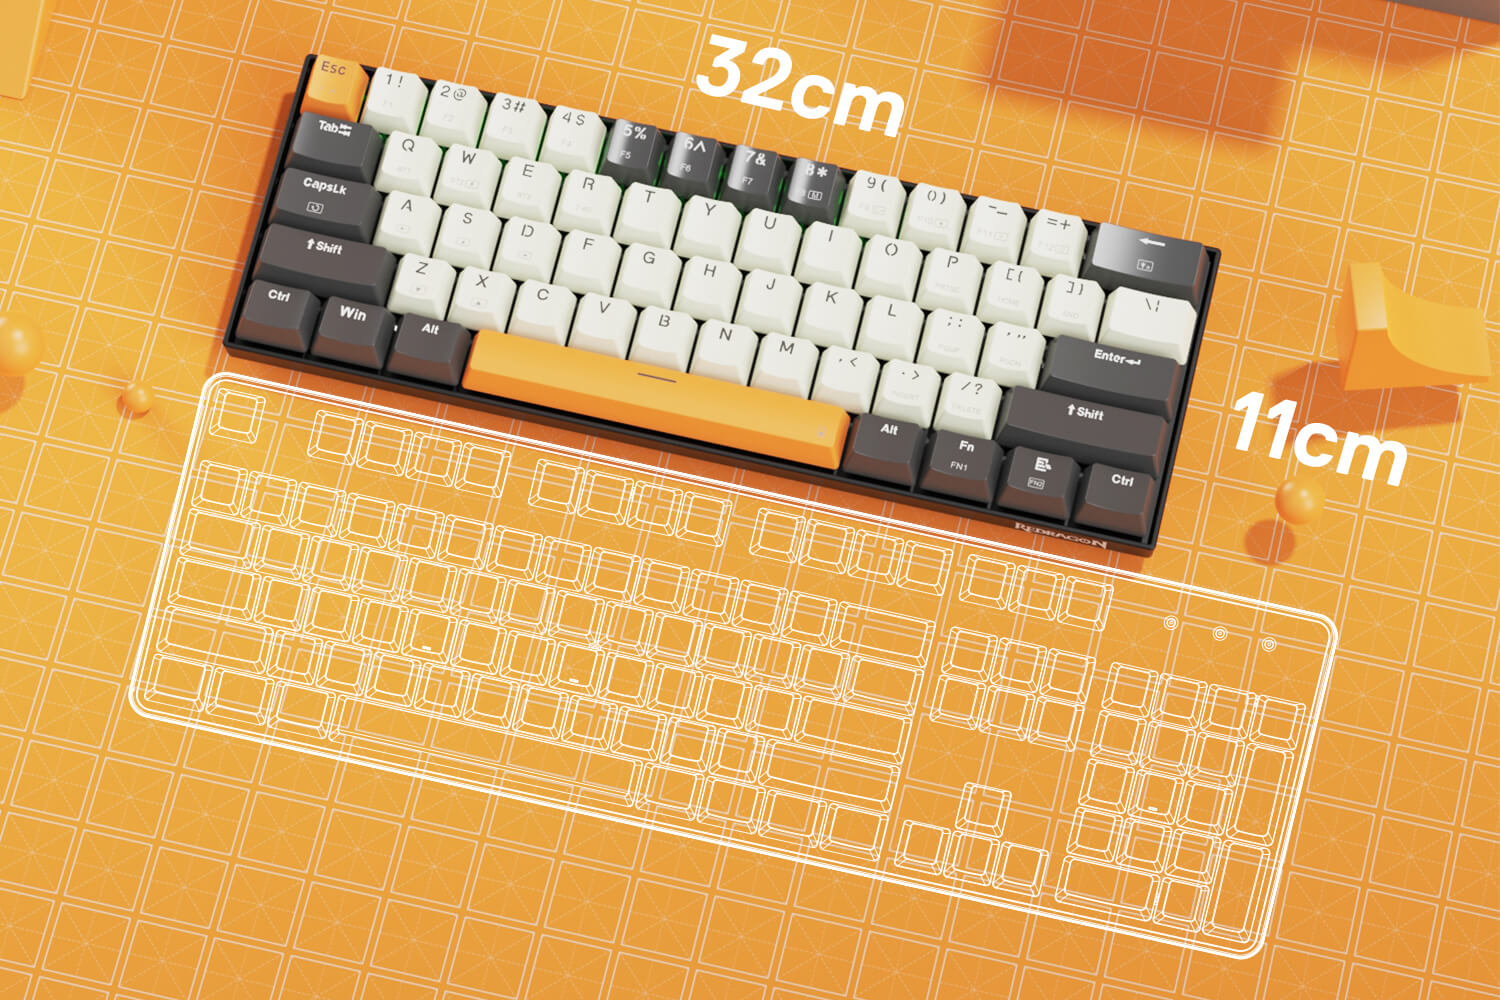 Redragon K644 SE 65% 3-Mode Wireless RGB Gaming Keyboard